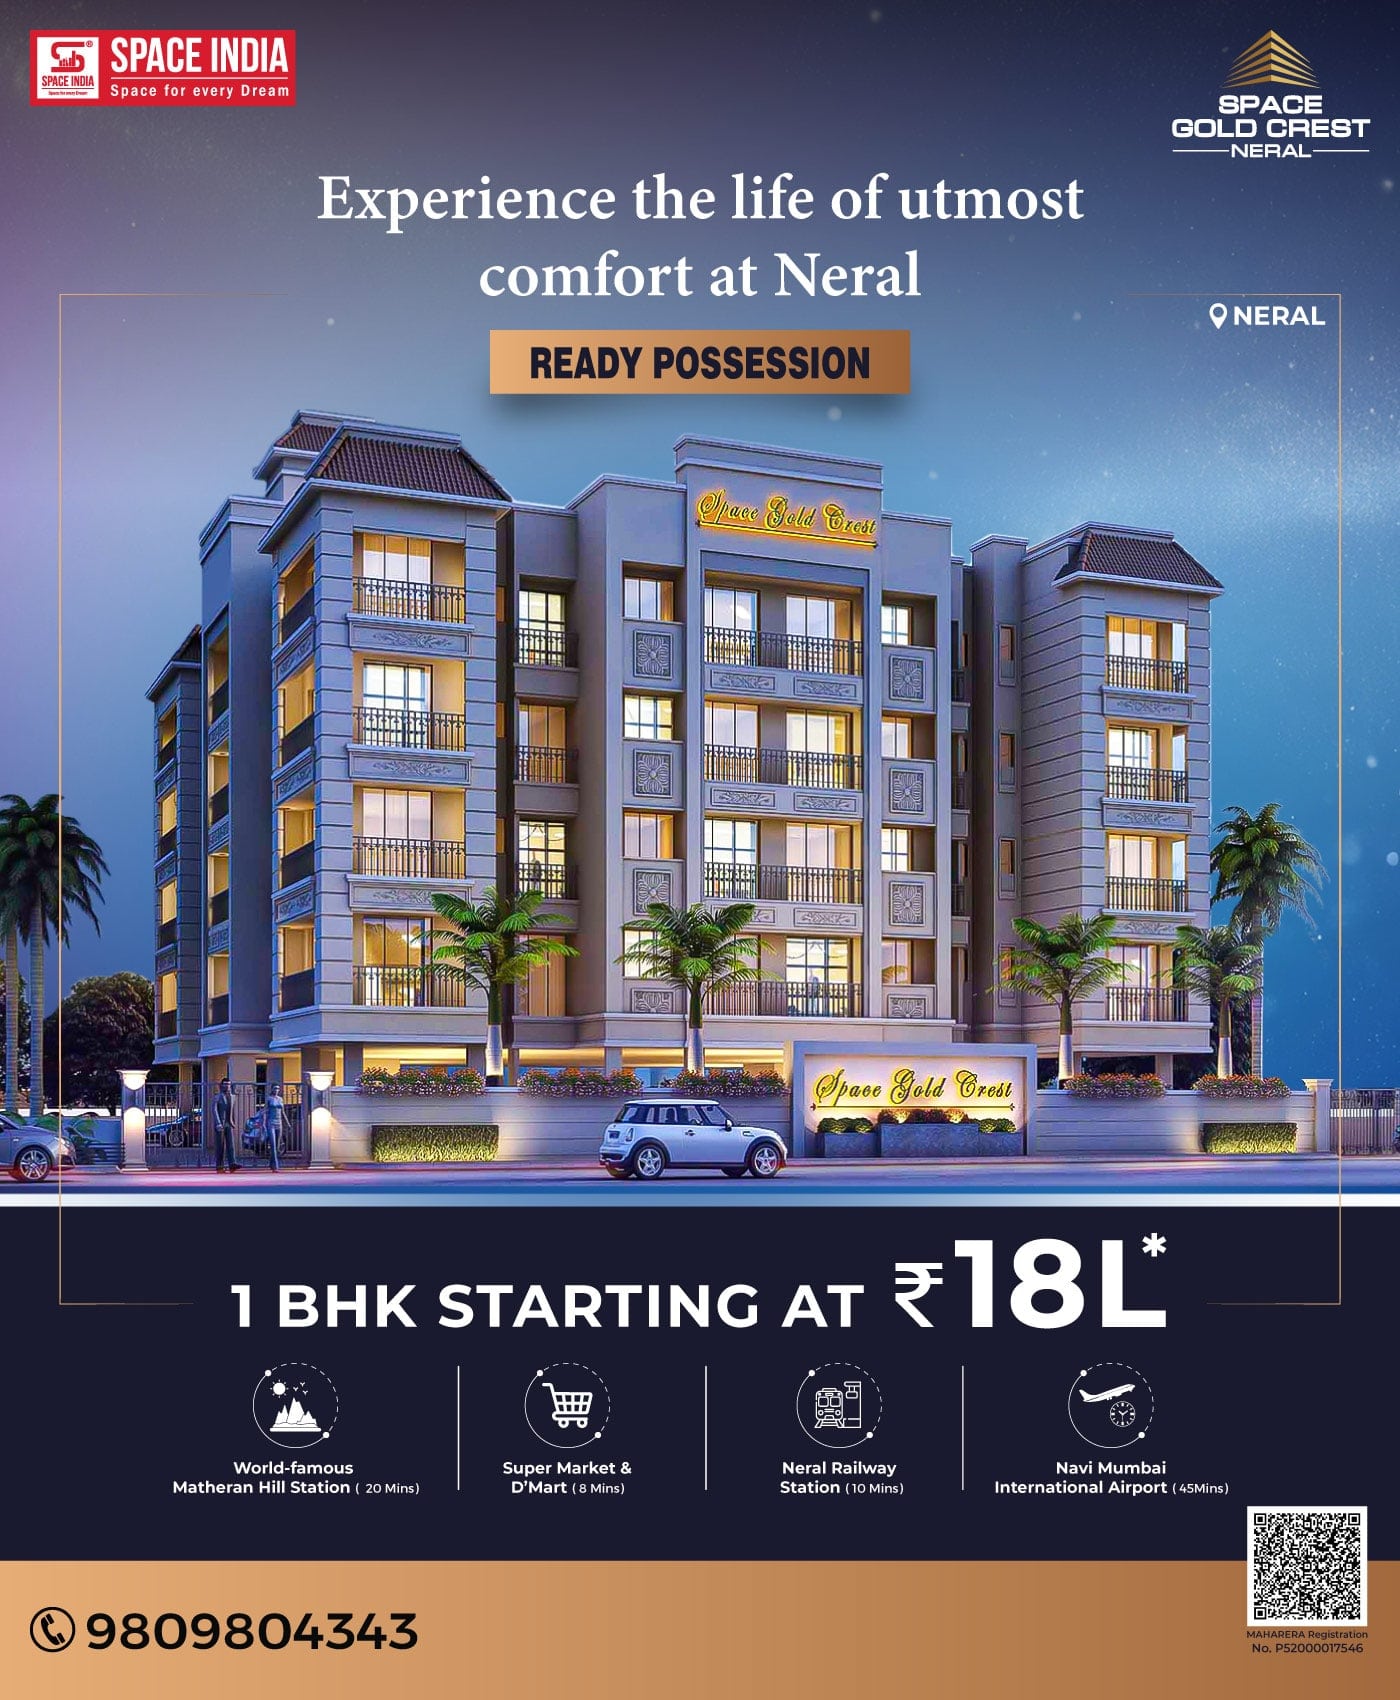 1 BHK Homes in Neral starting at ₹18L* - Navi Mumbai Apartments, Condos